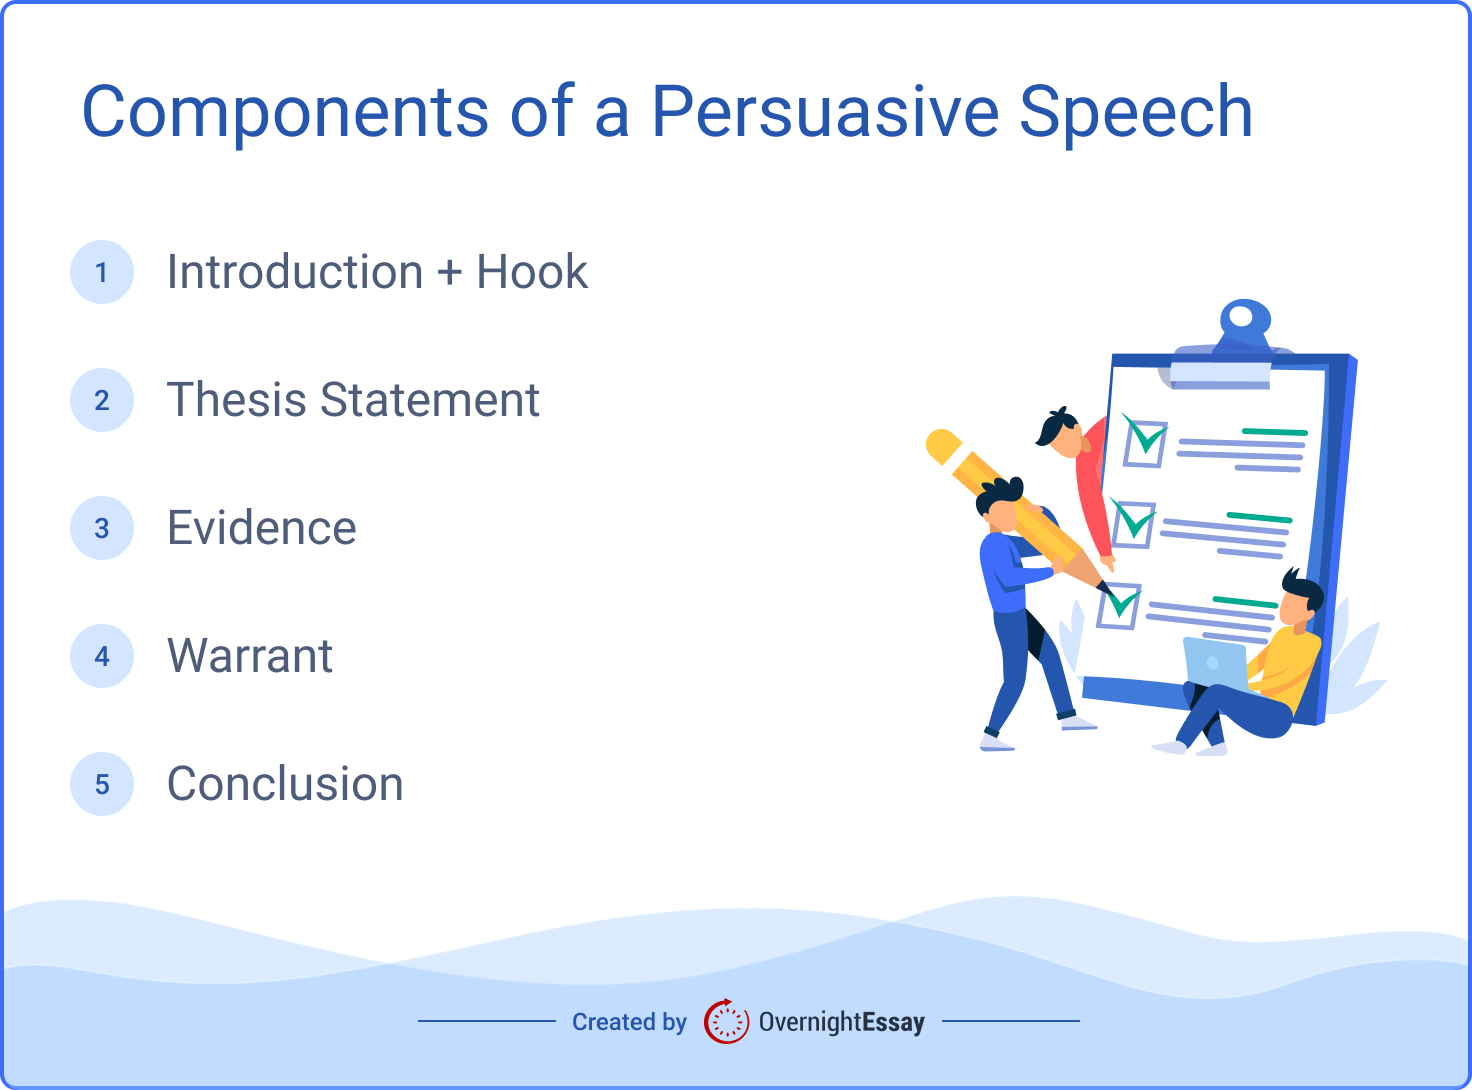 persuasive speech topics